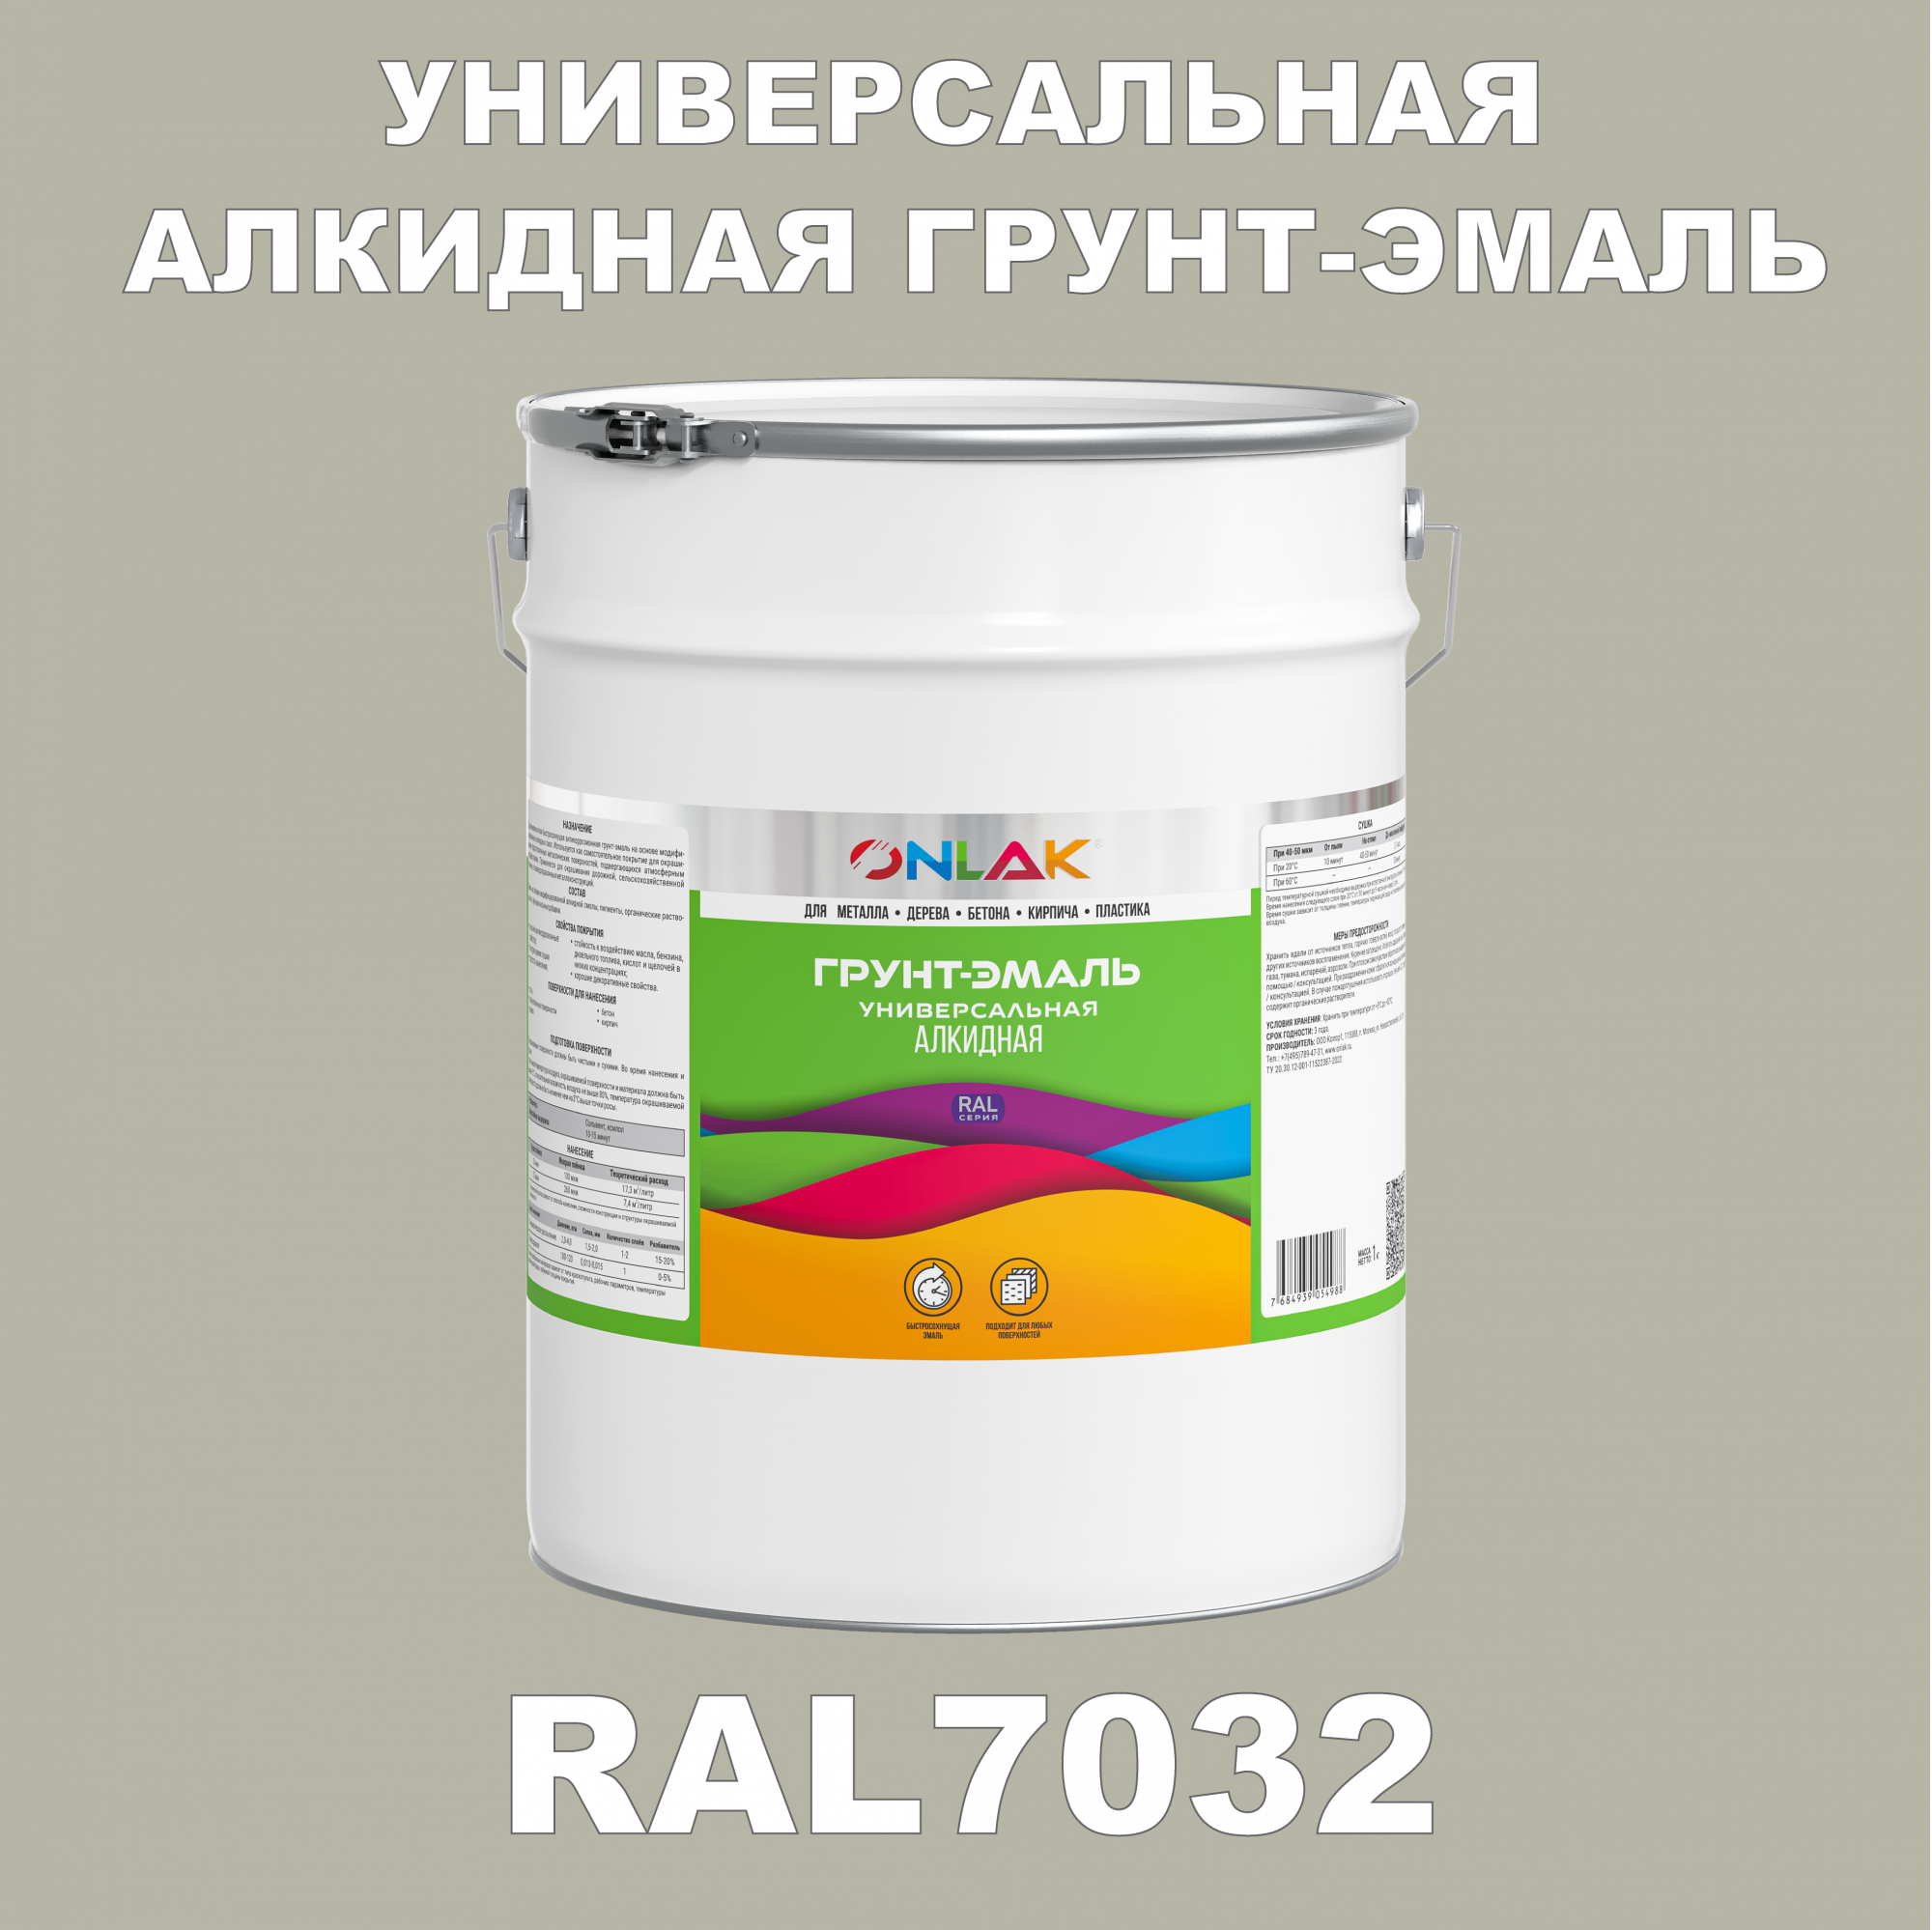 Грунт-эмаль ONLAK 1К RAL7032 антикоррозионная алкидная по металлу по ржавчине 20 кг